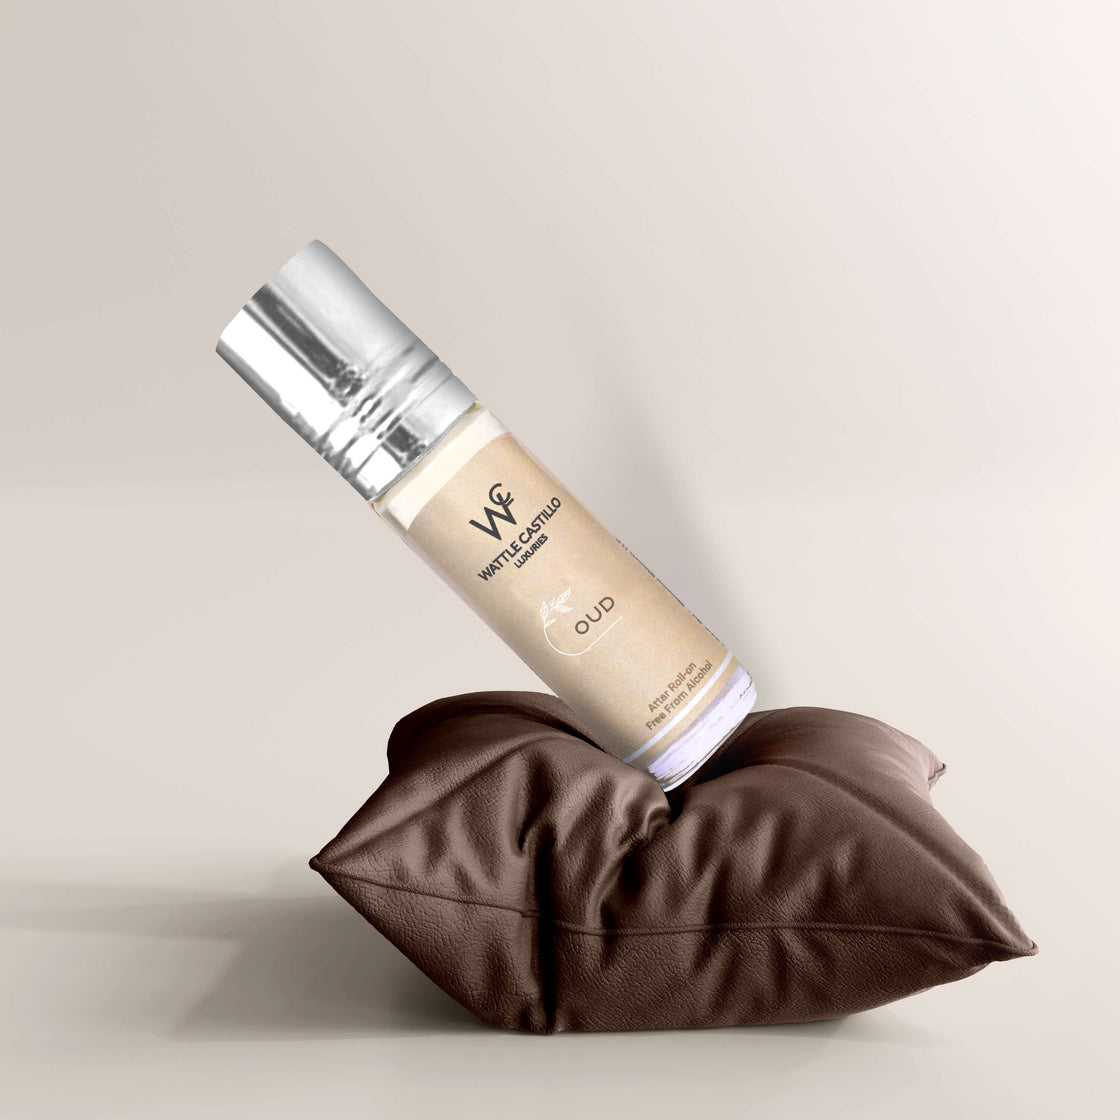 Wattle Castillo Oud Premium Luxury 100% Non Alcoholic Long Lasting Roll On Attar Perfume For Unisex 6 ML - Wattle Castillo